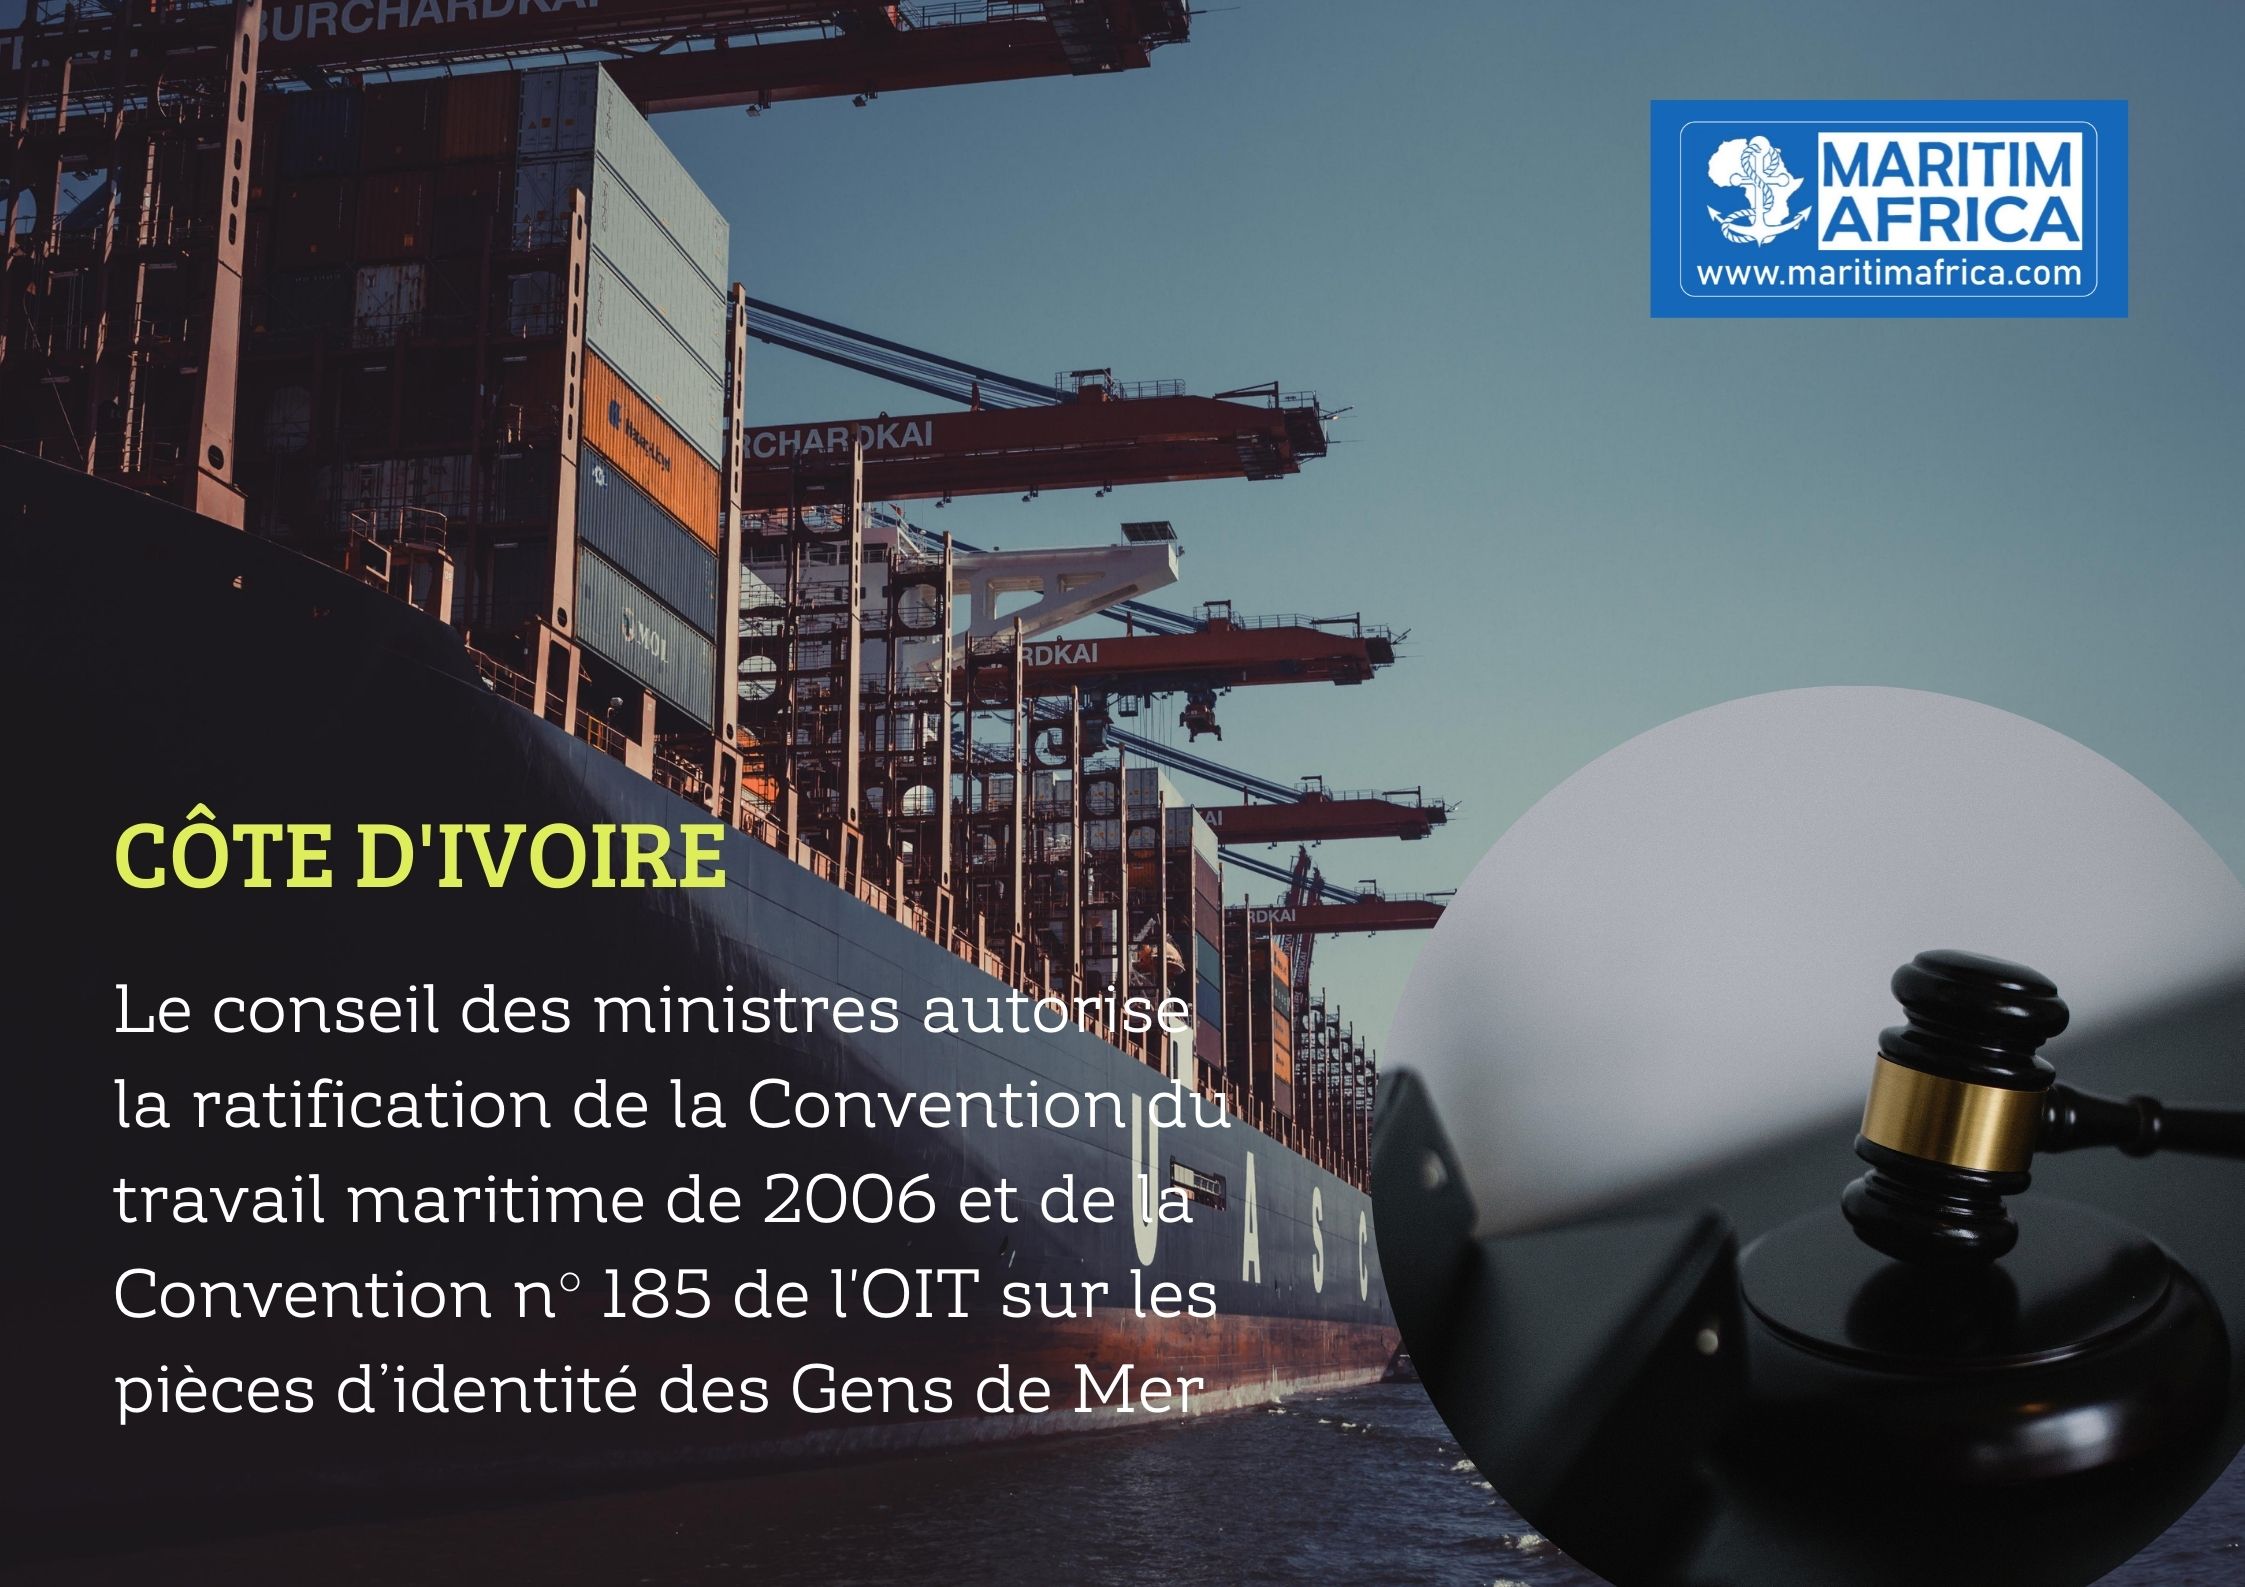 Côte d’Ivoire : Le conseil des ministres autorise la ratification de la Convention du travail maritime de 2006 et de la Convention n° 185 de l’OIT sur les pièces d’identité des Gens de Mer